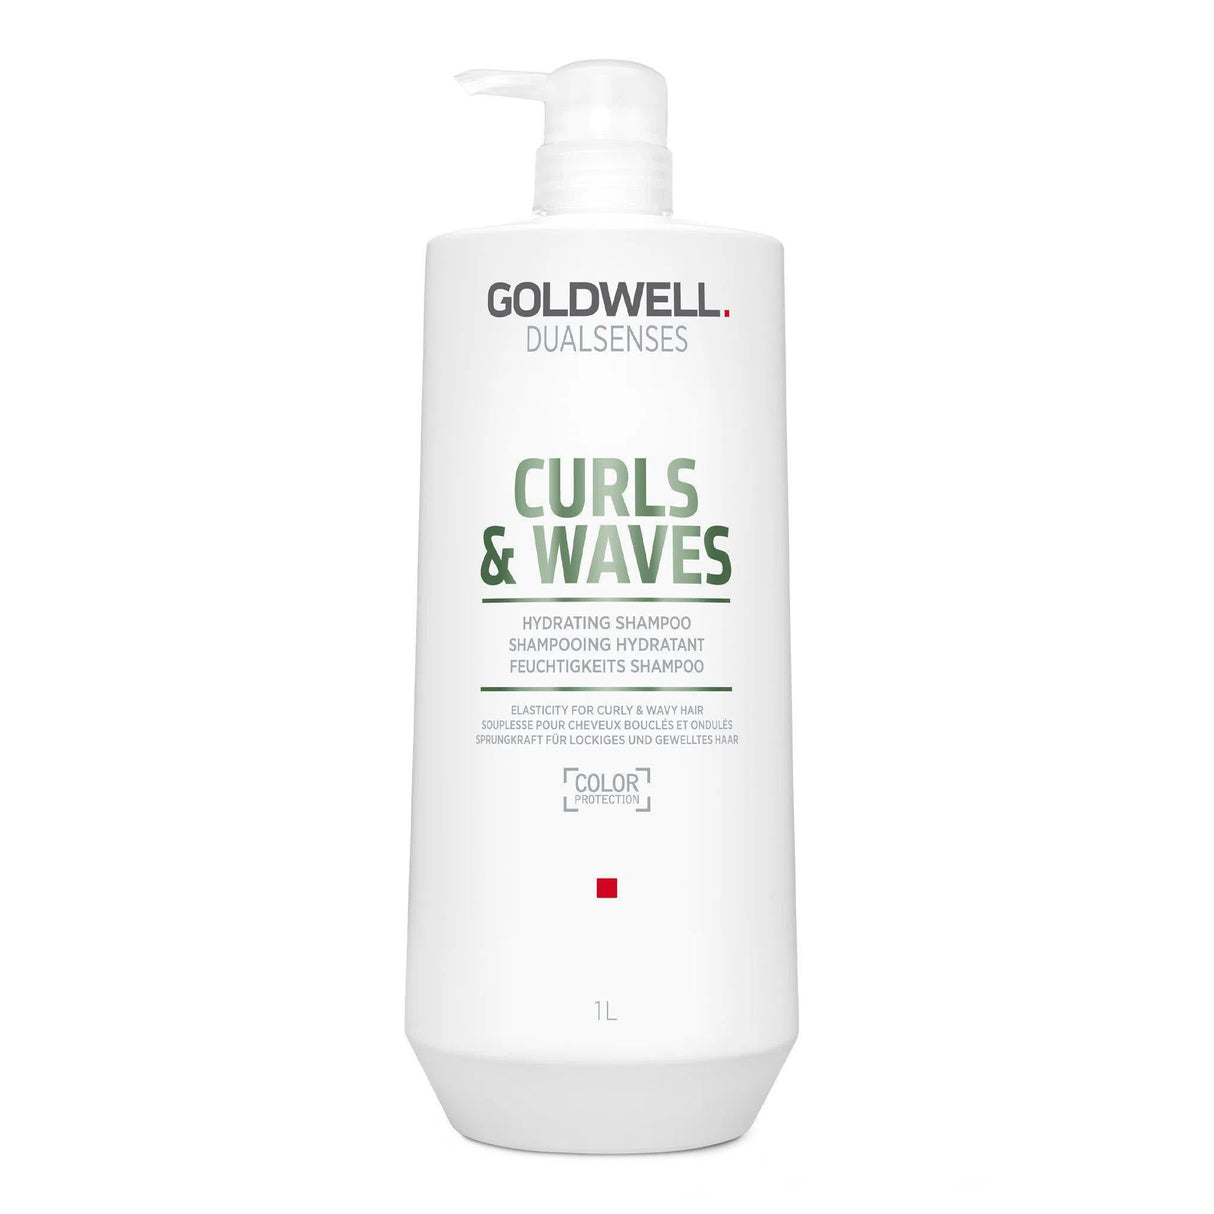 Curls + Waves Hydrating Shampoo